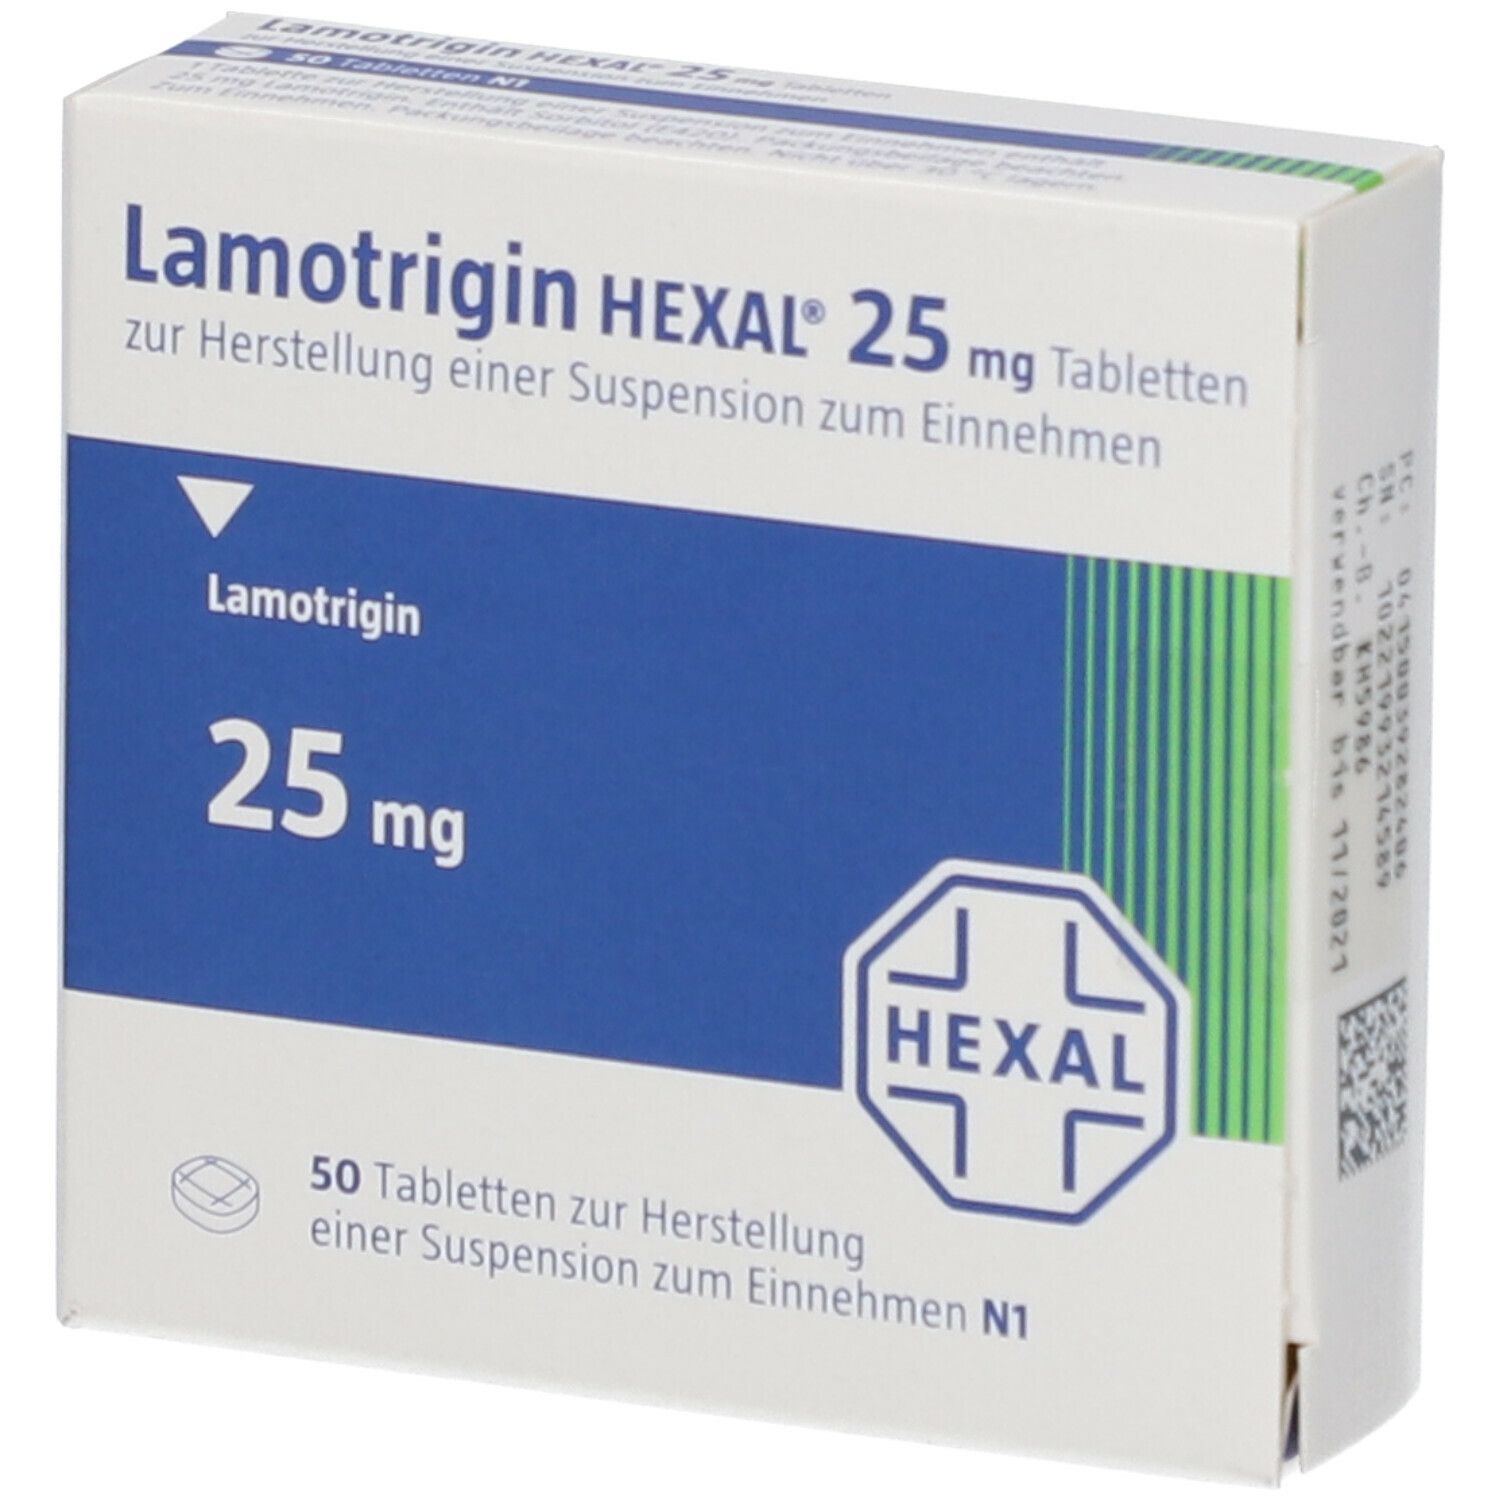 Lamotrigin HEXAL® 25 mg